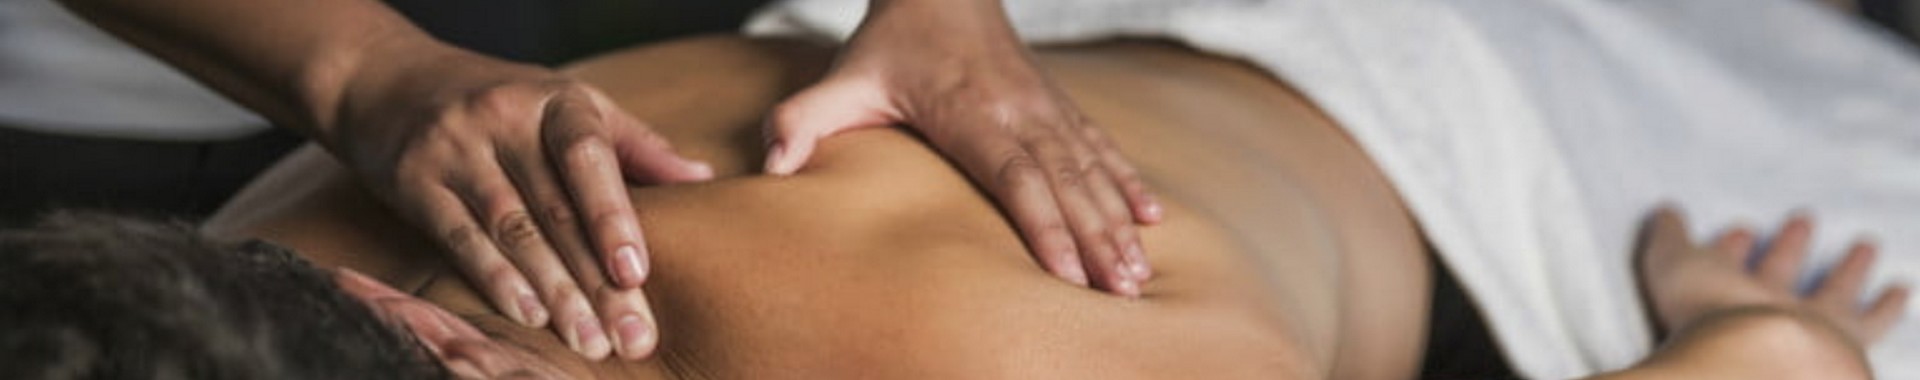 massage in dubai